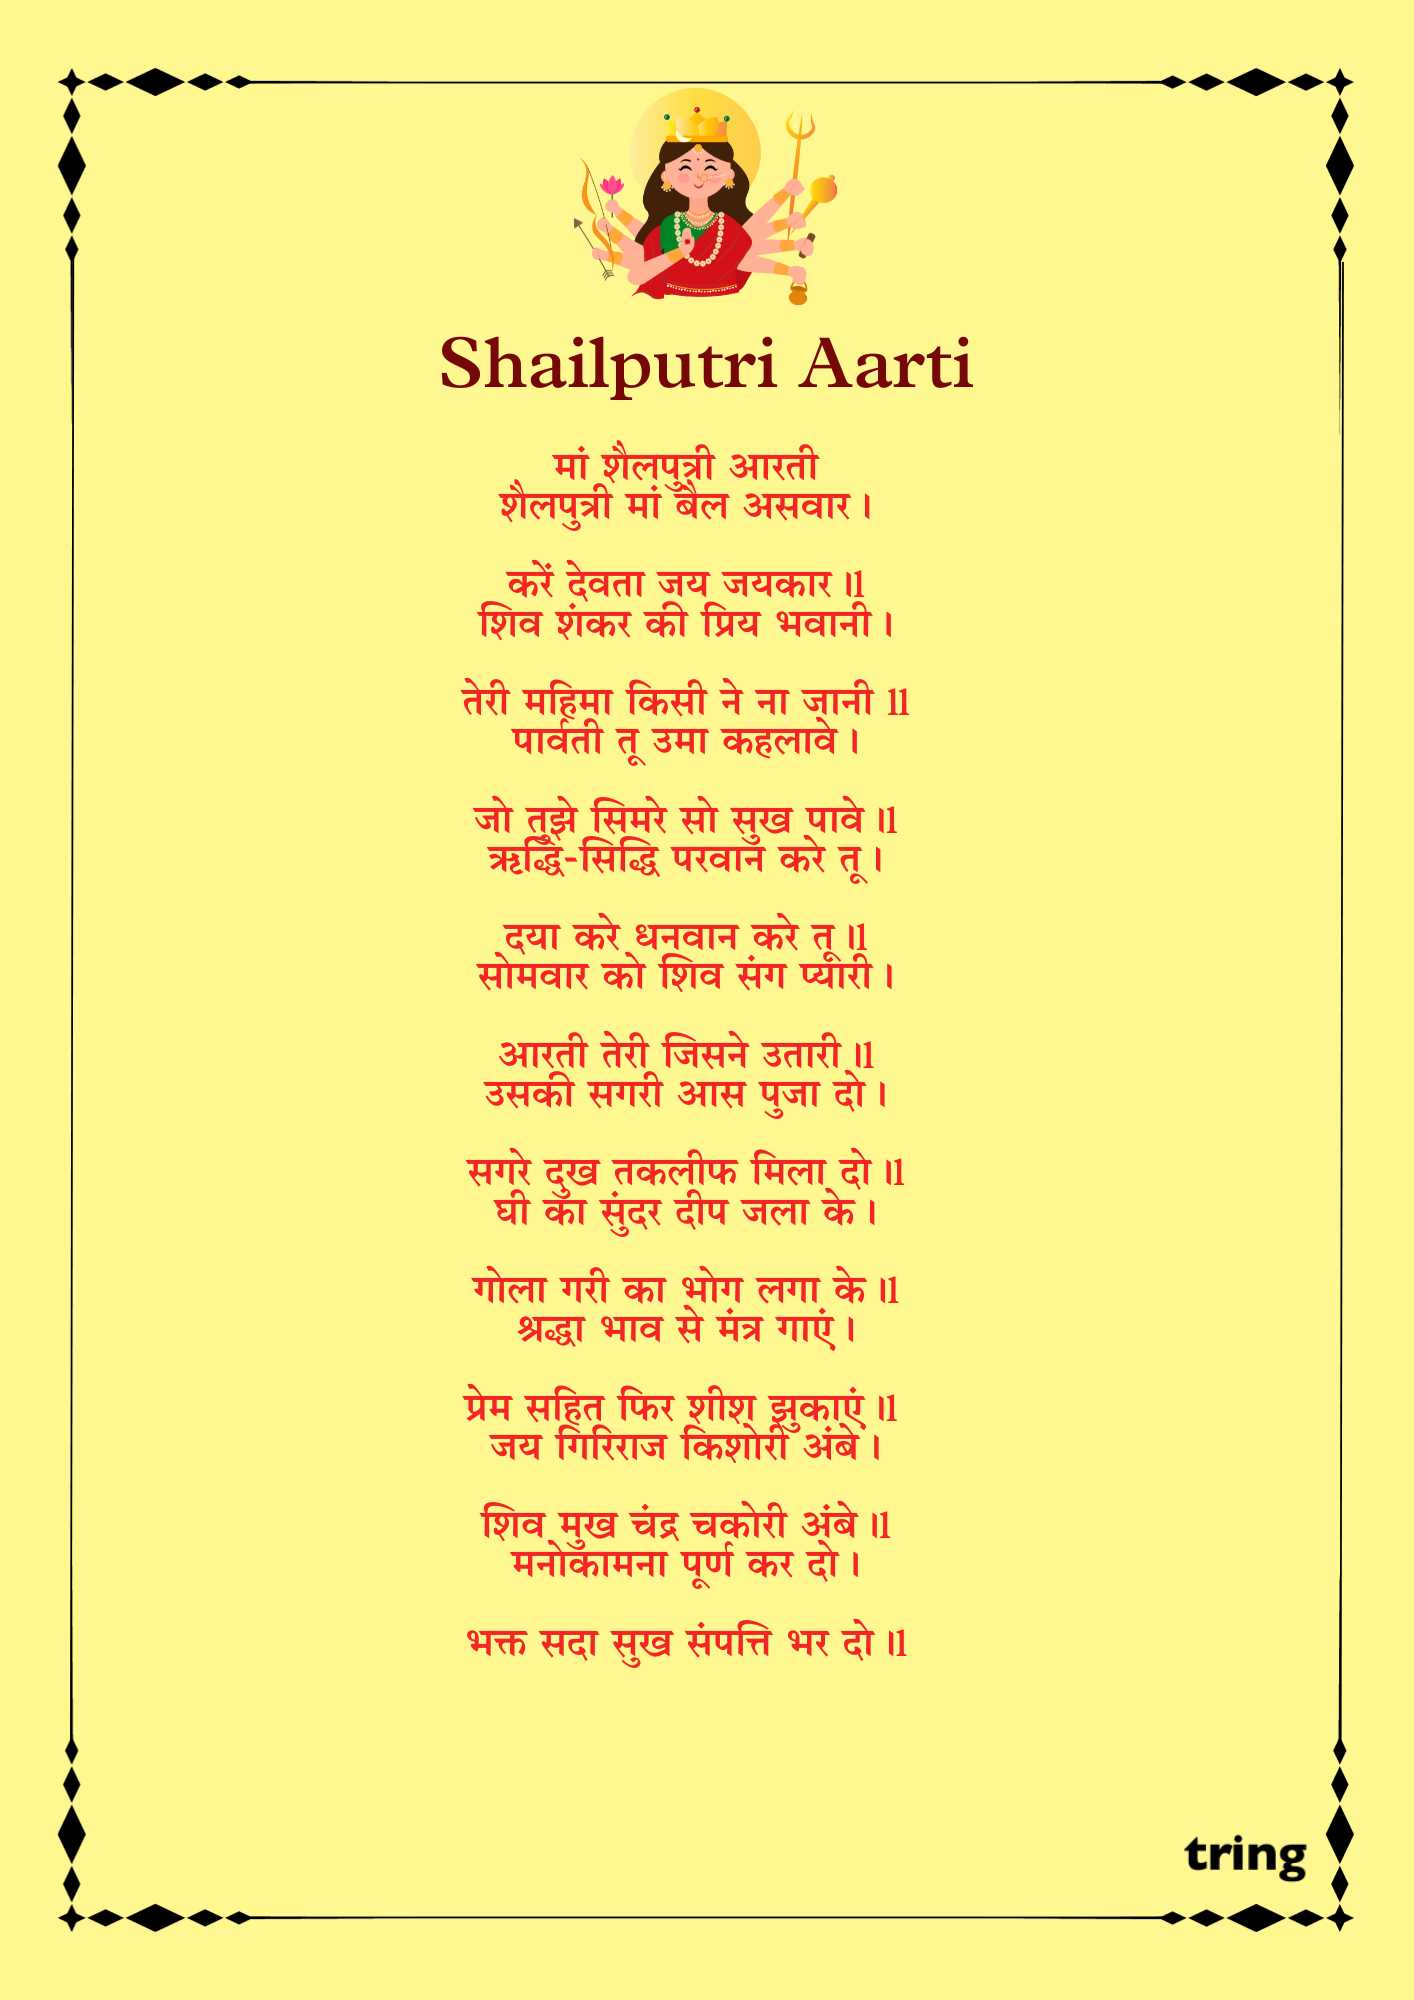 Shailputri Aarti Images